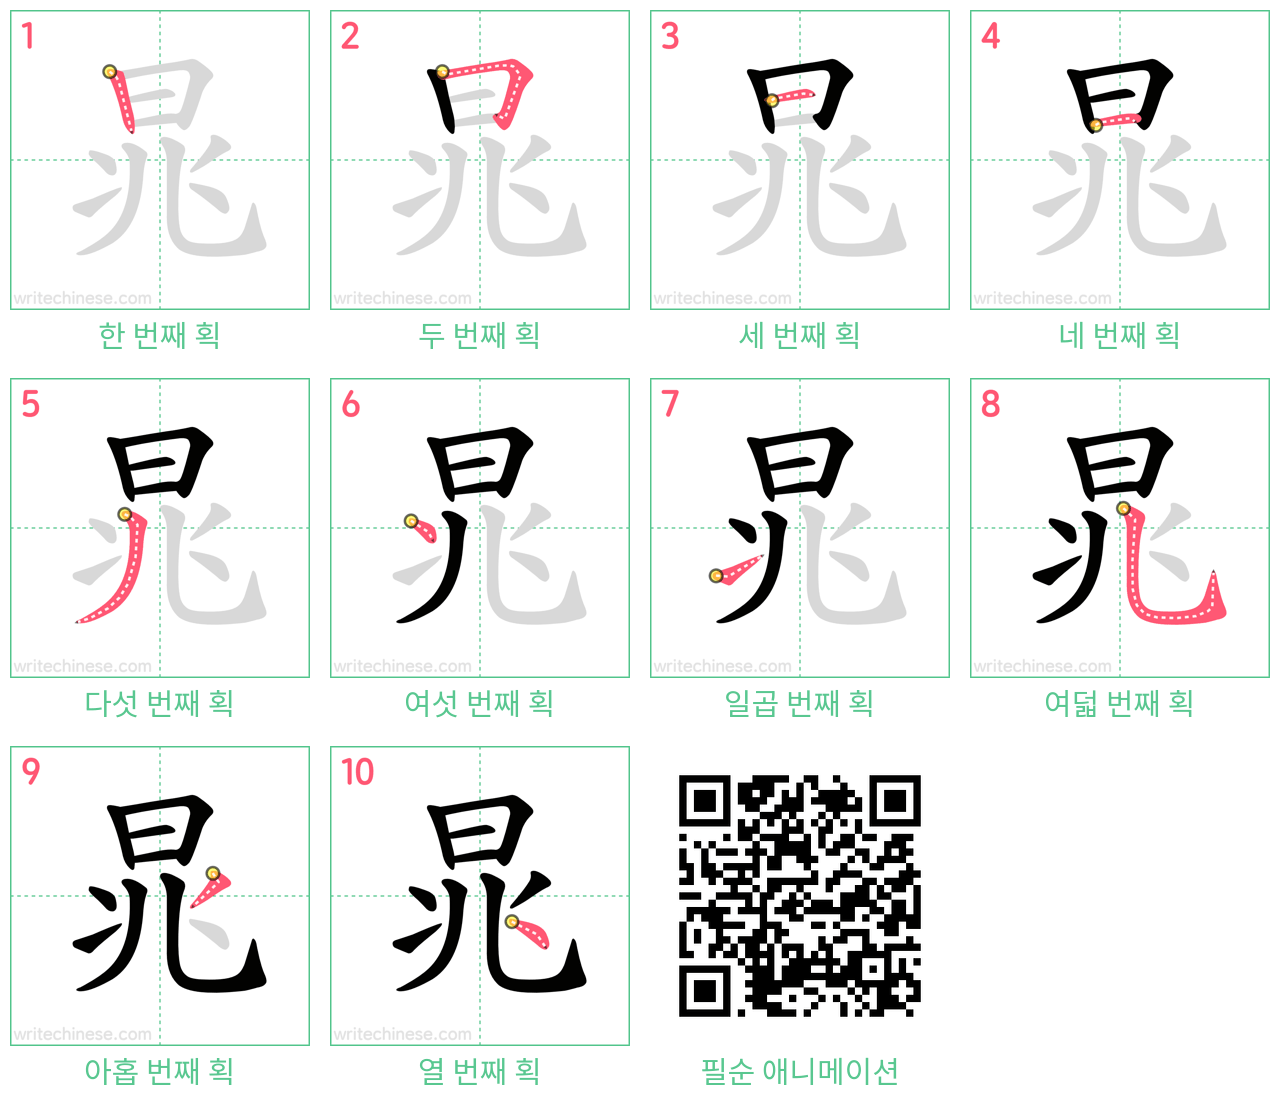 晁 step-by-step stroke order diagrams